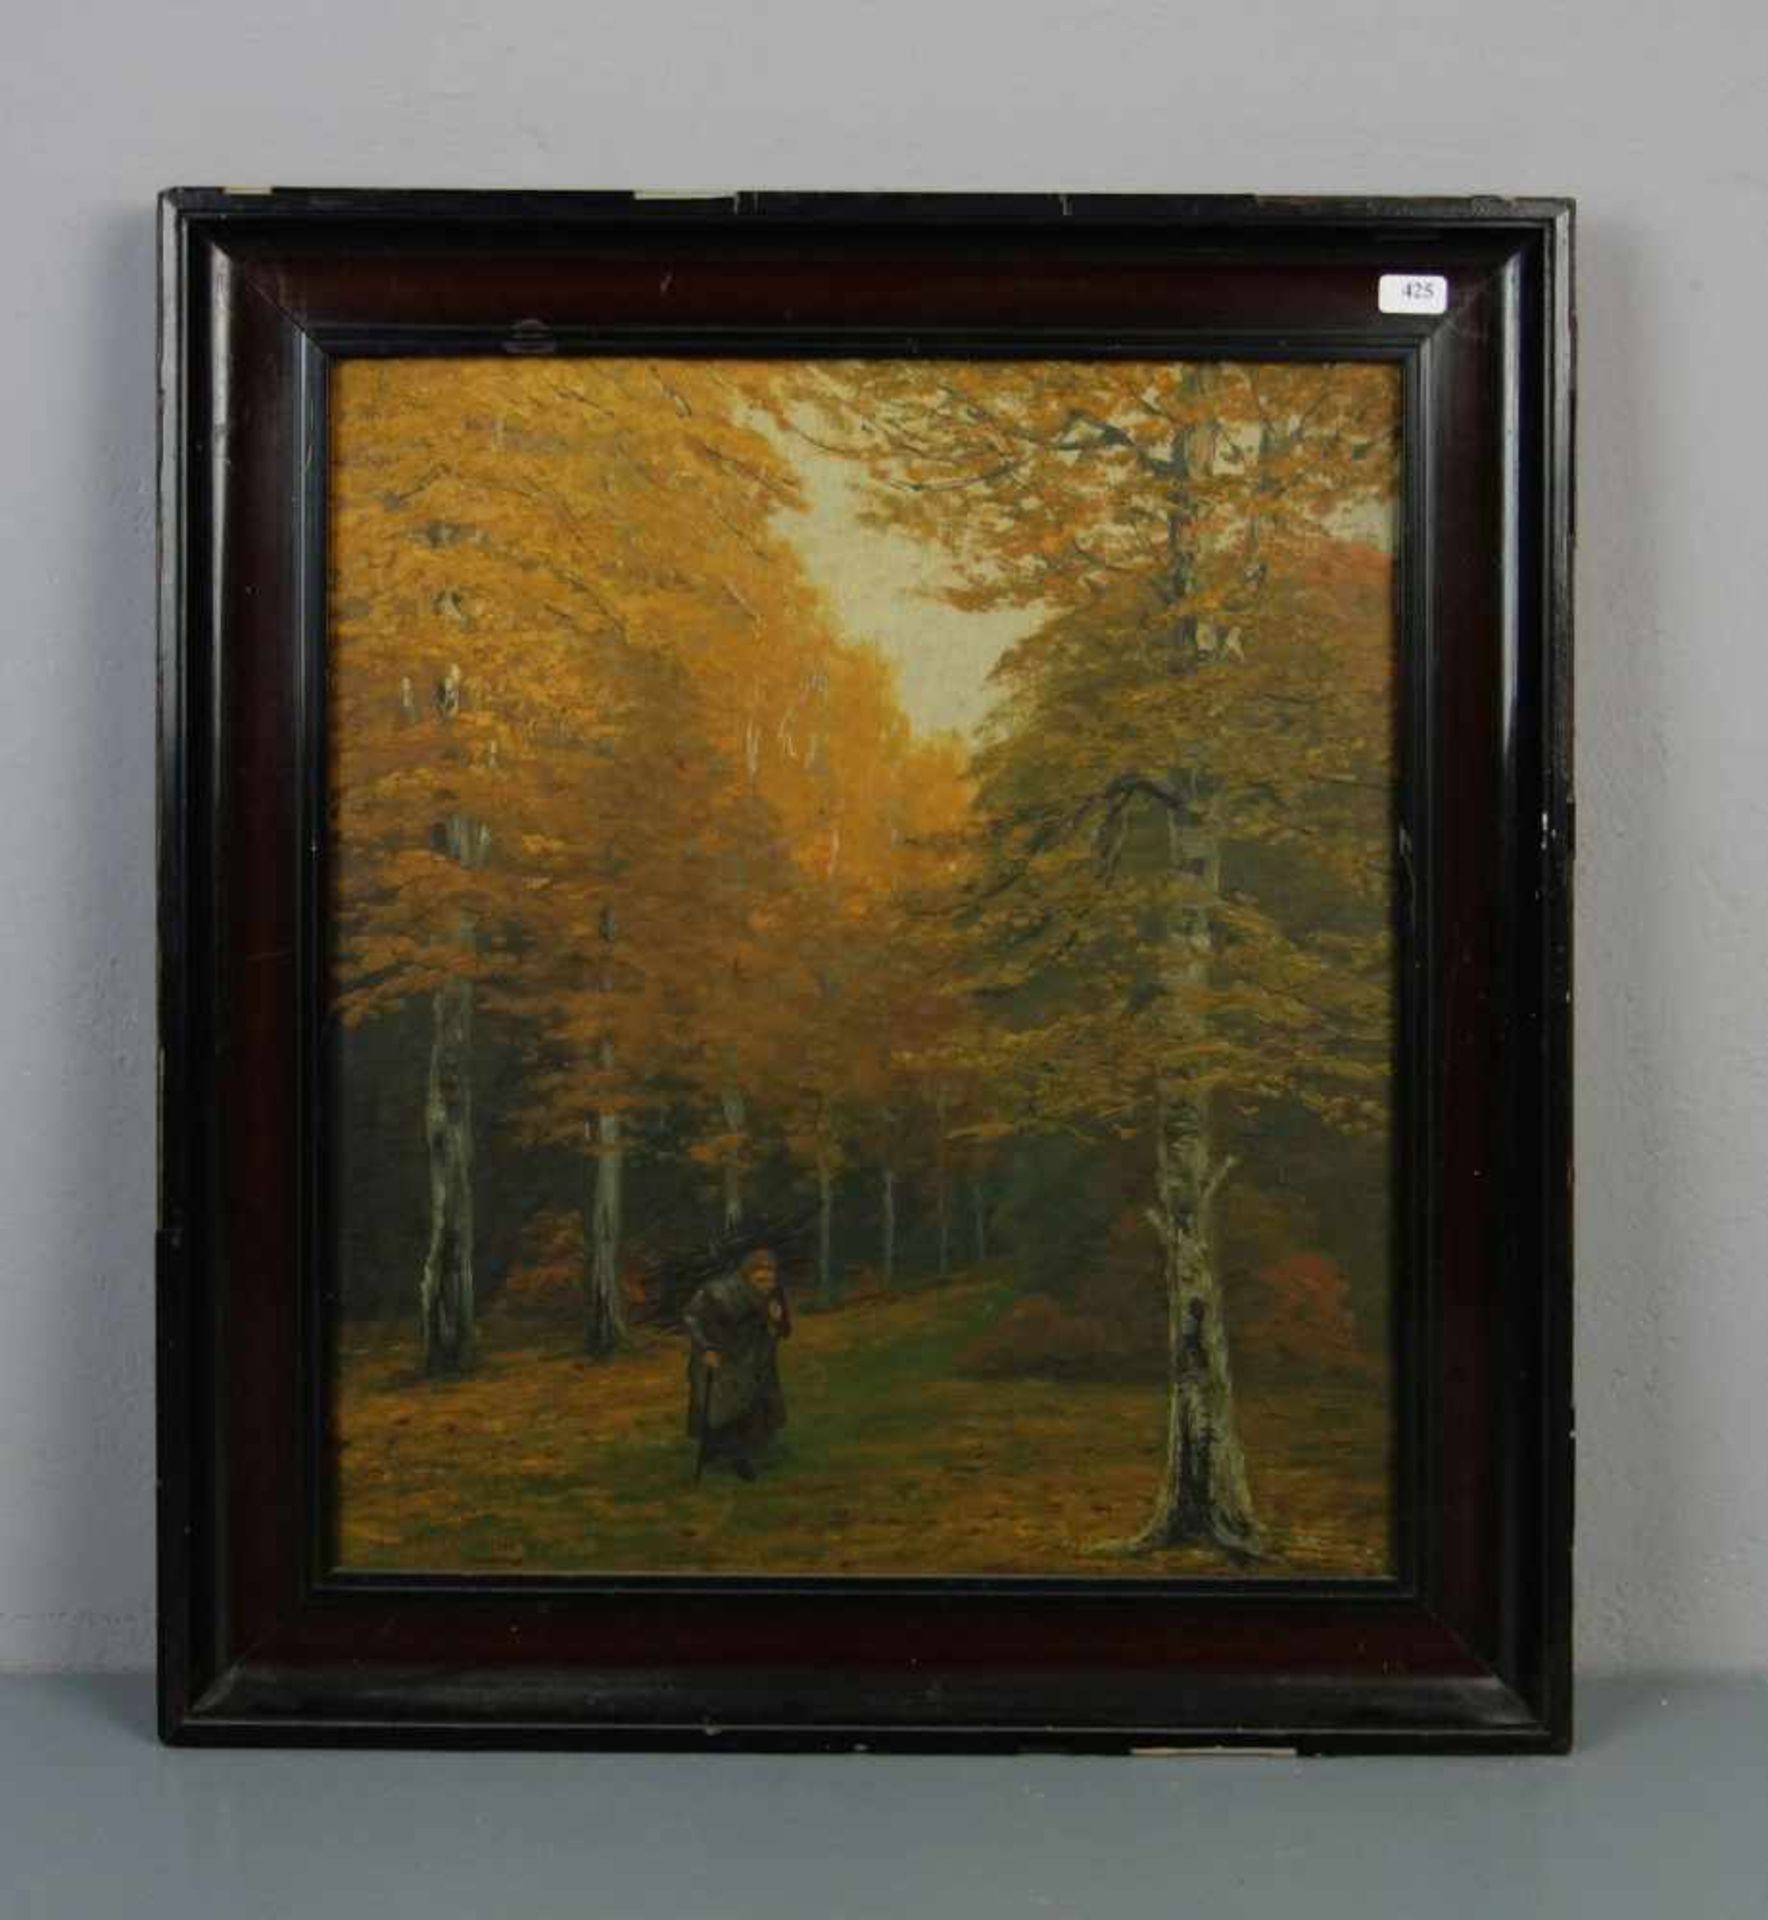 FRECKMANN, A. (19./20. Jh.), Gemälde / painting: "Herbstlicher Wald mit Reisigsammlerin", Öl auf